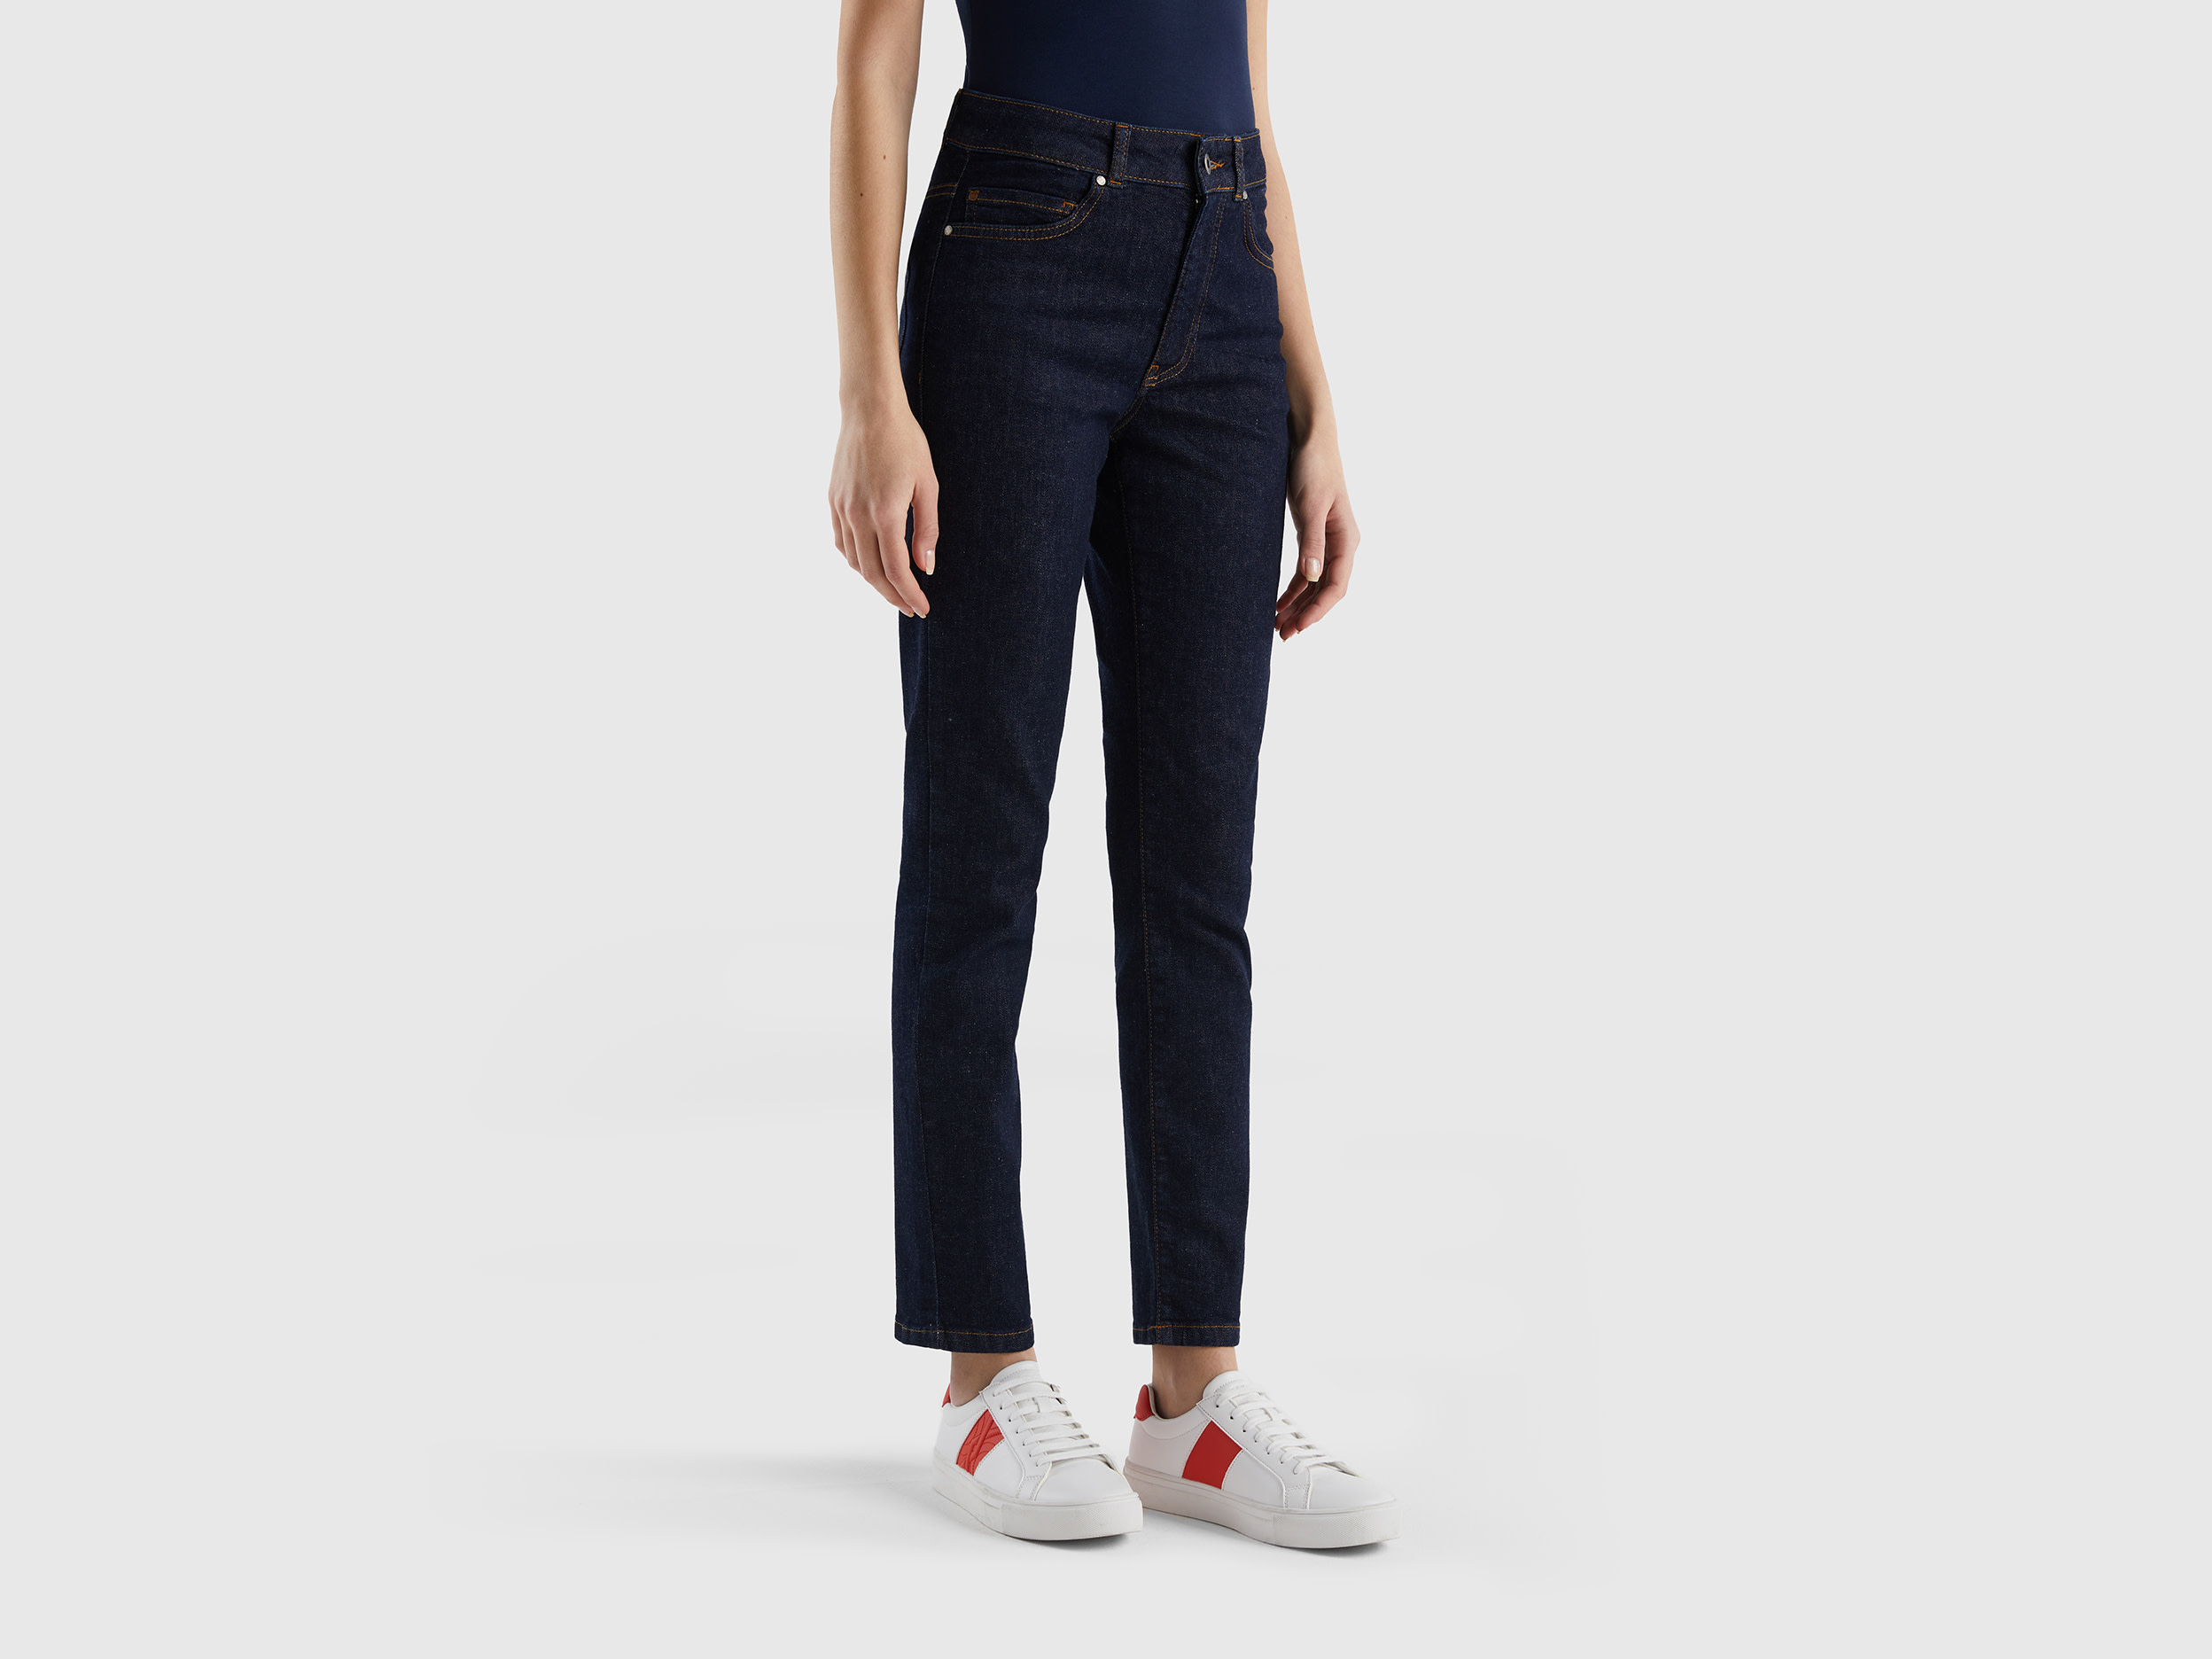 Benetton, Slim Fit Jeans In Stretch Cotton, size 29, Dark Blue, Women